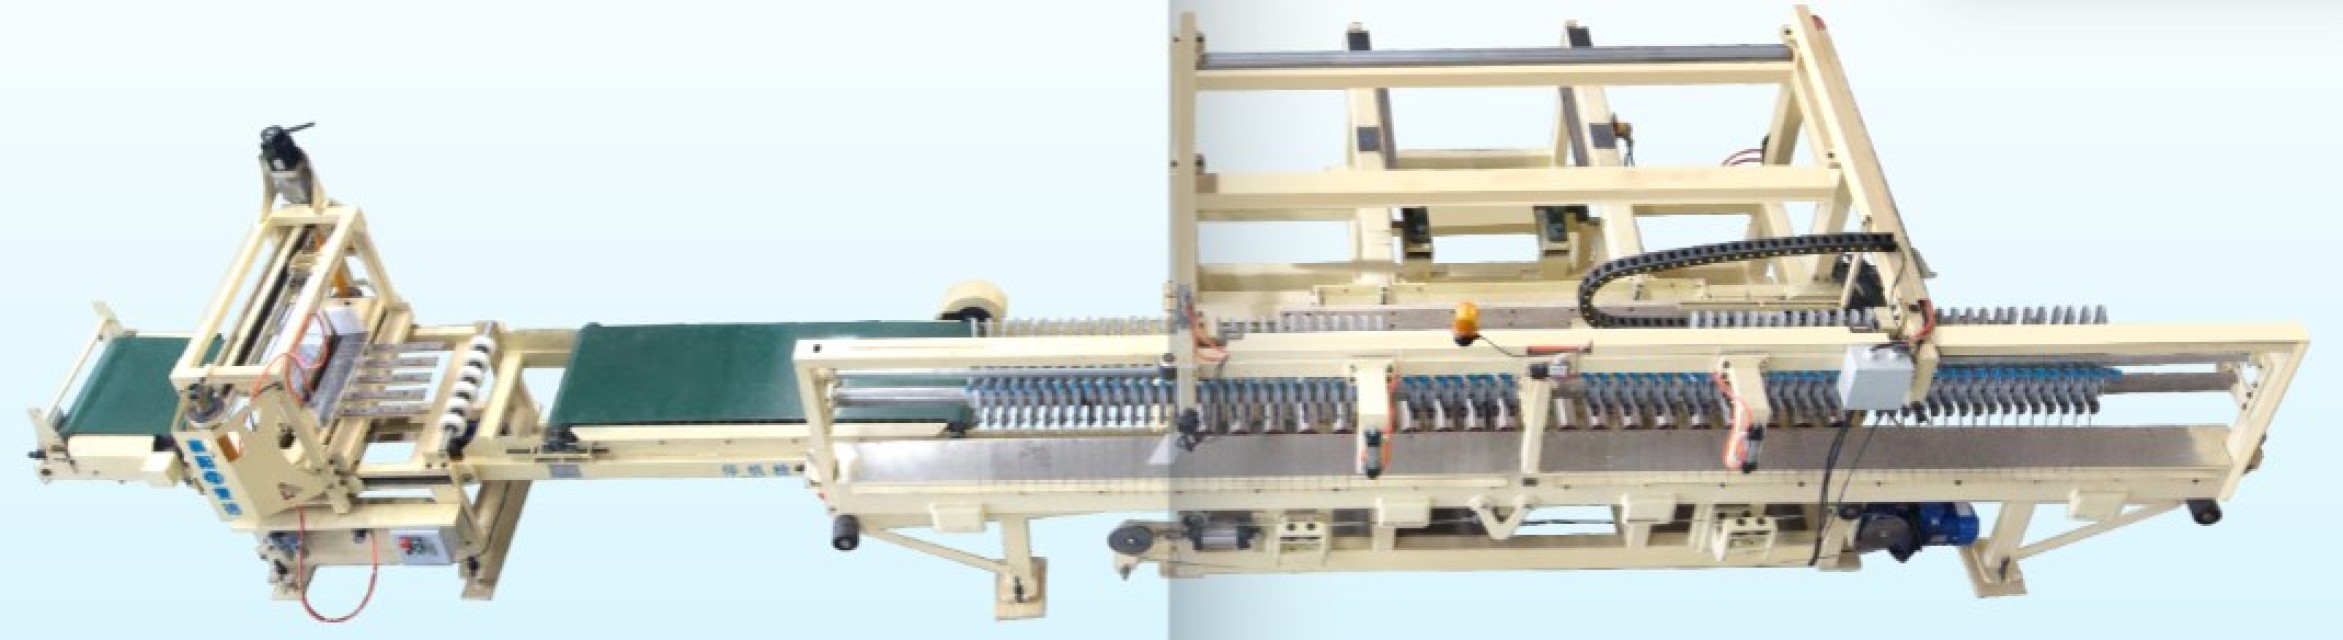 Precision Brick Cutting Machine - High-Speed Cutter